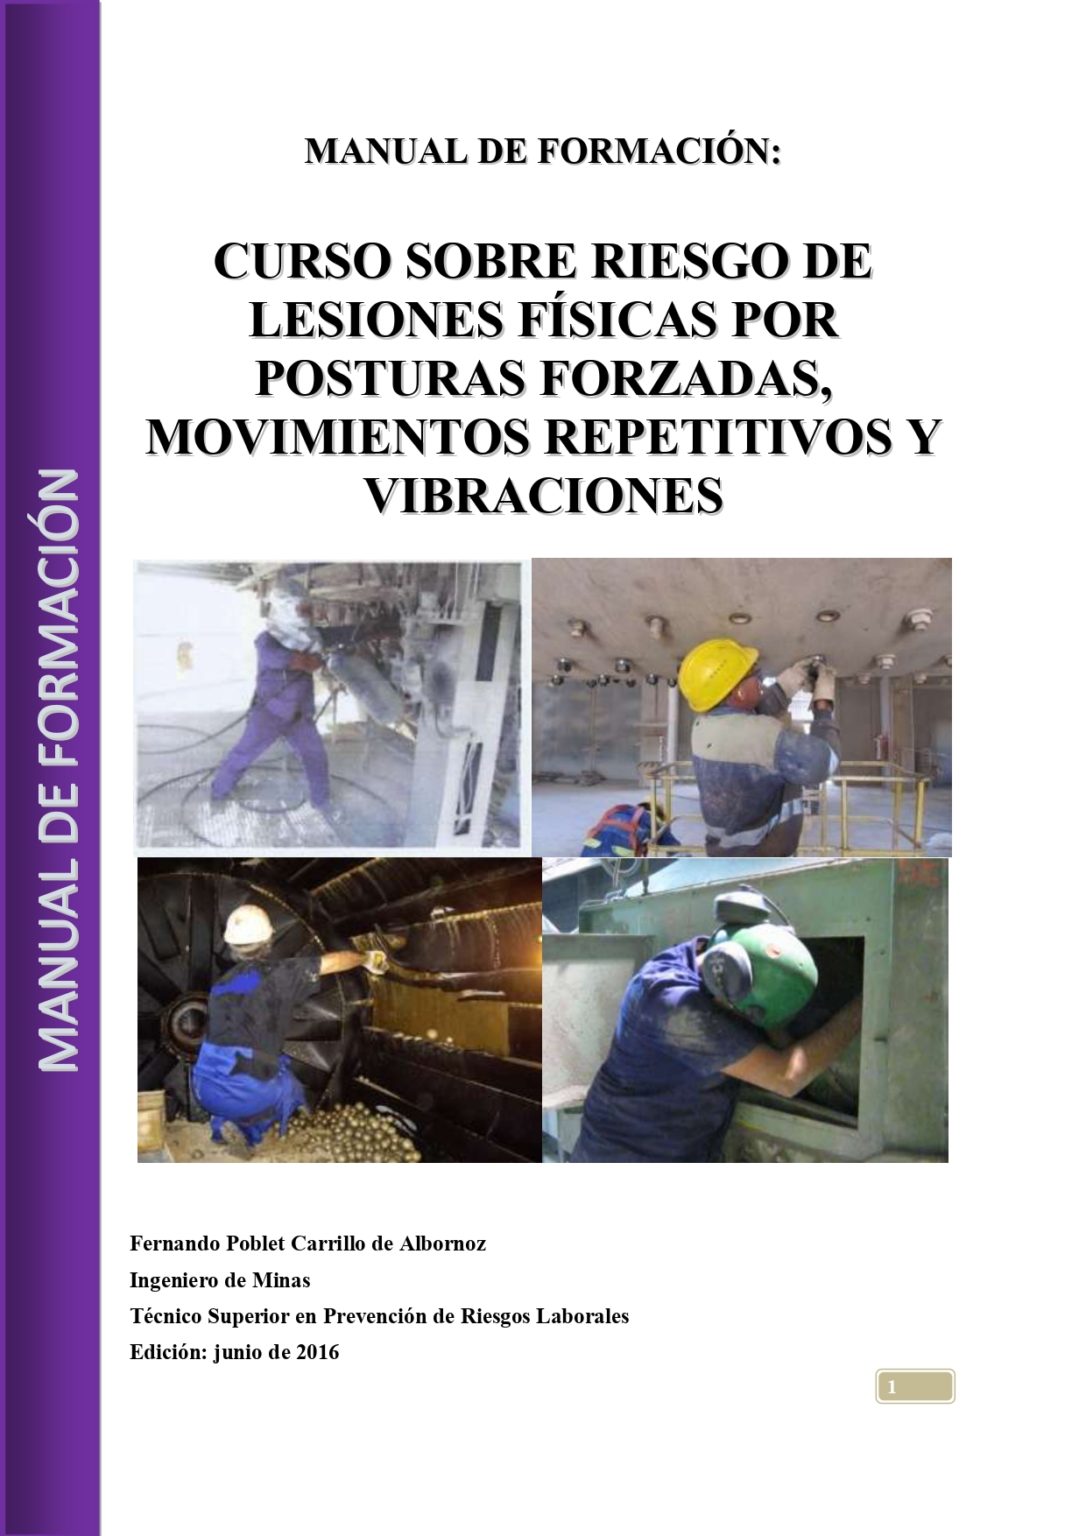 CURSO-SOBRE-POSTURAS-FORZADAS-Y-RASTORNOS-MOV-REPETIDOS_page-0001